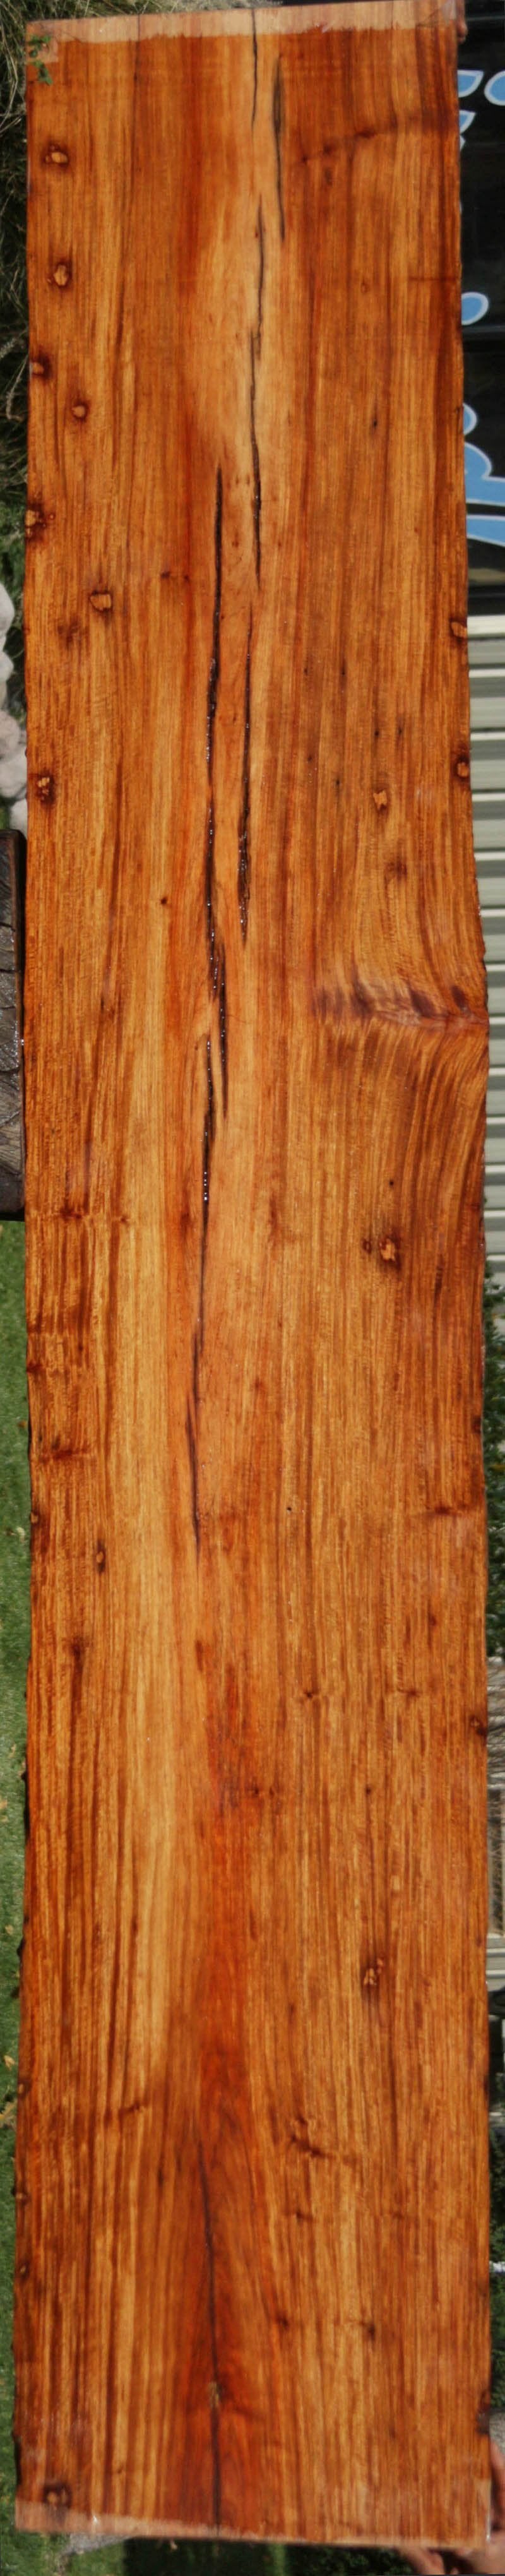 Narra Lumber